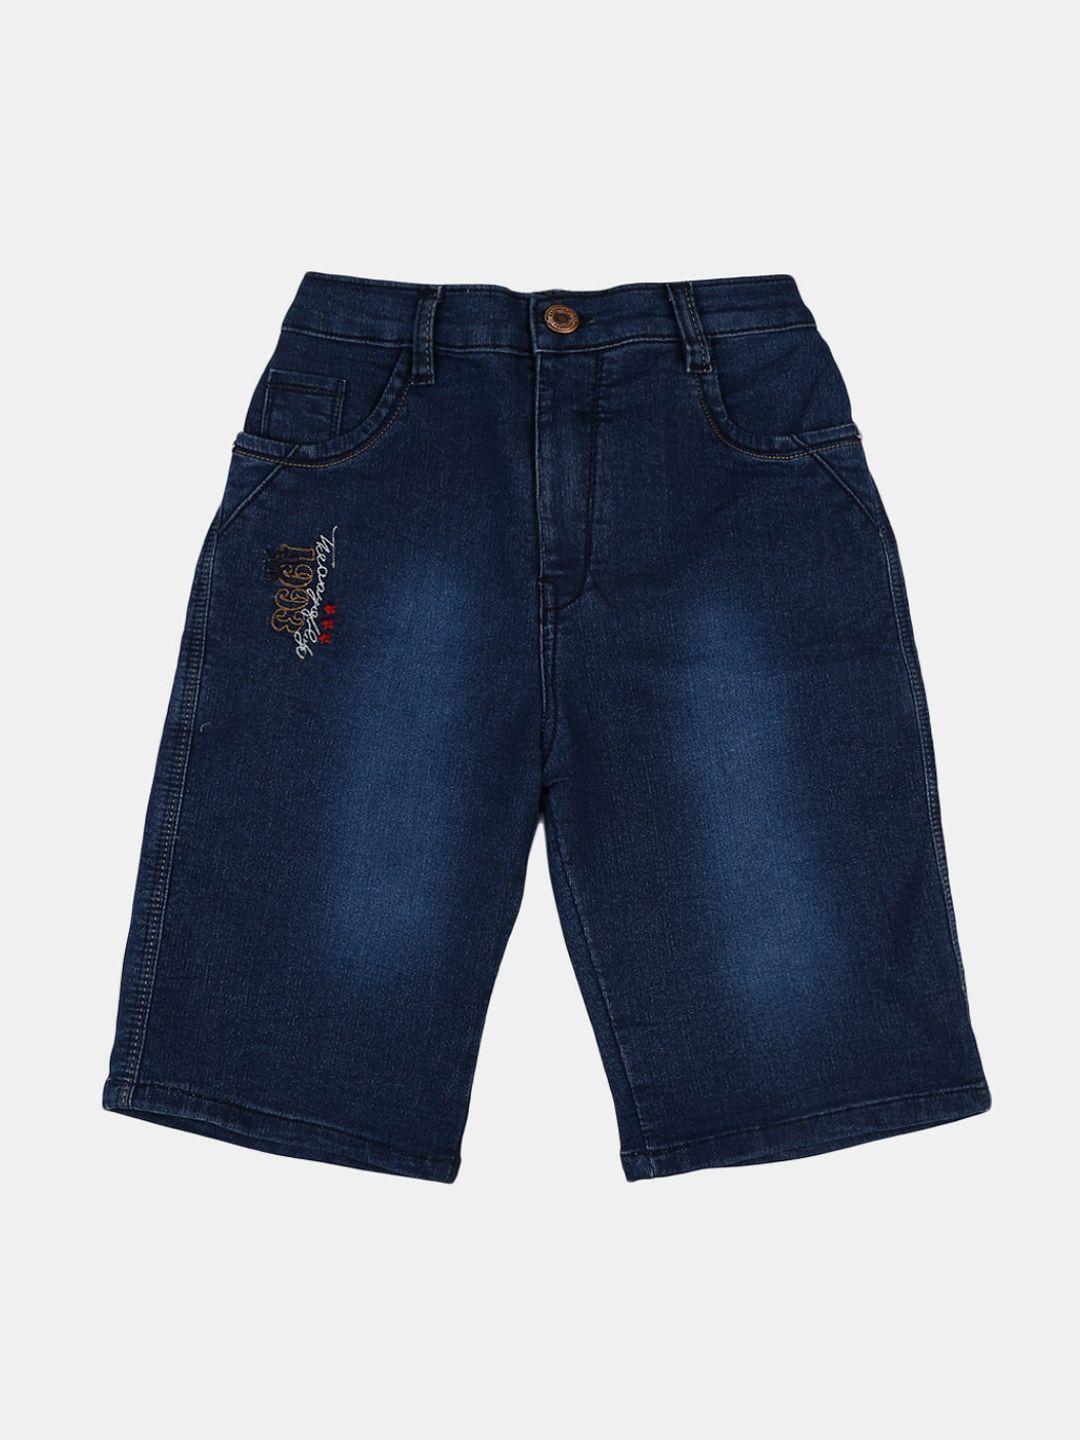 v-mart boys navy blue washed denim shorts